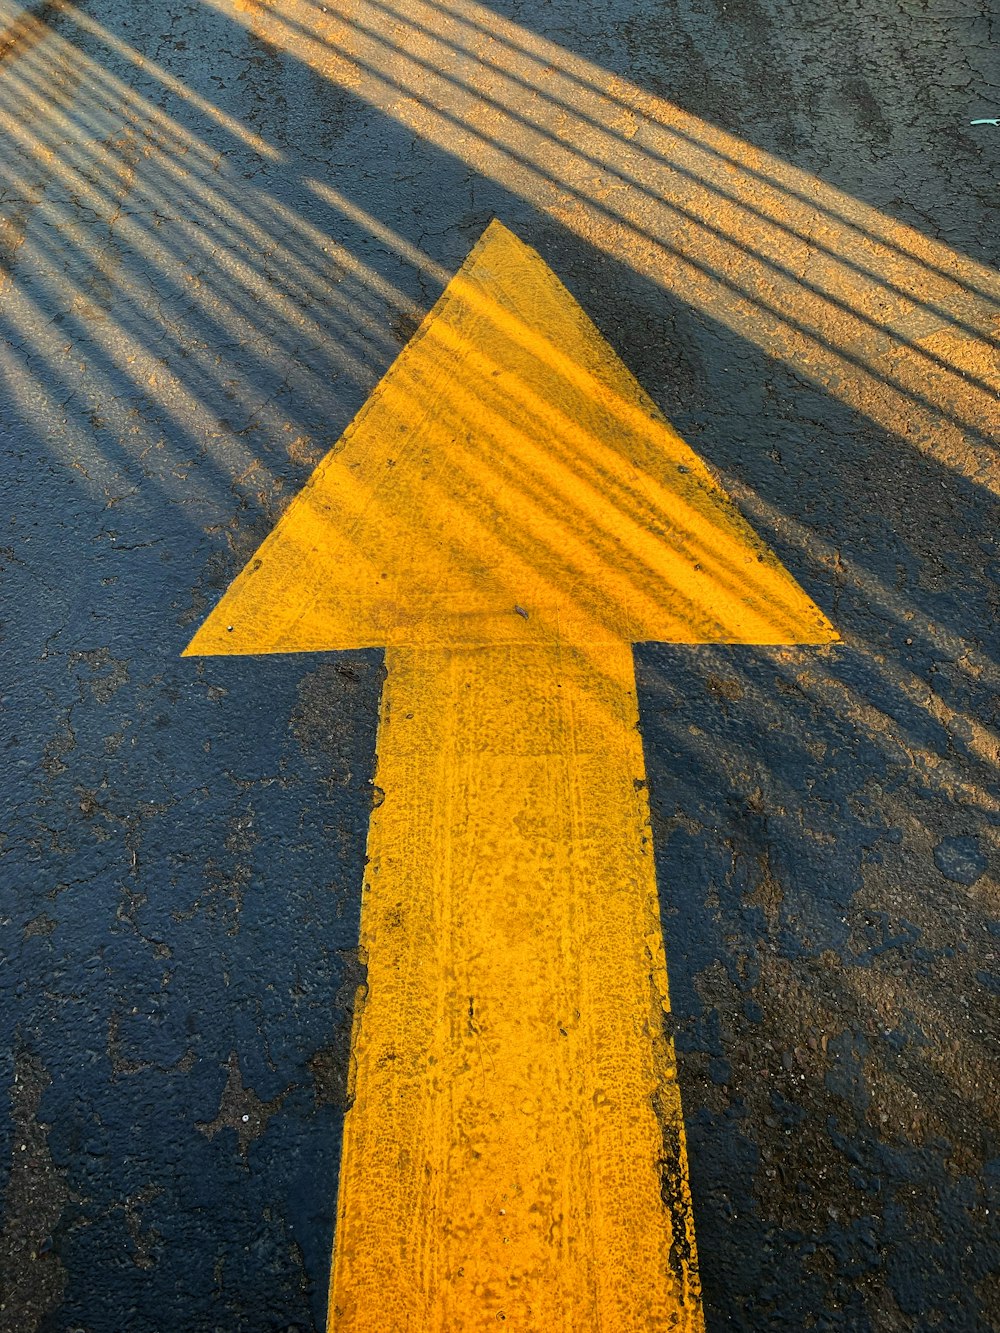 Señal de flecha amarilla en carretera de concreto gris